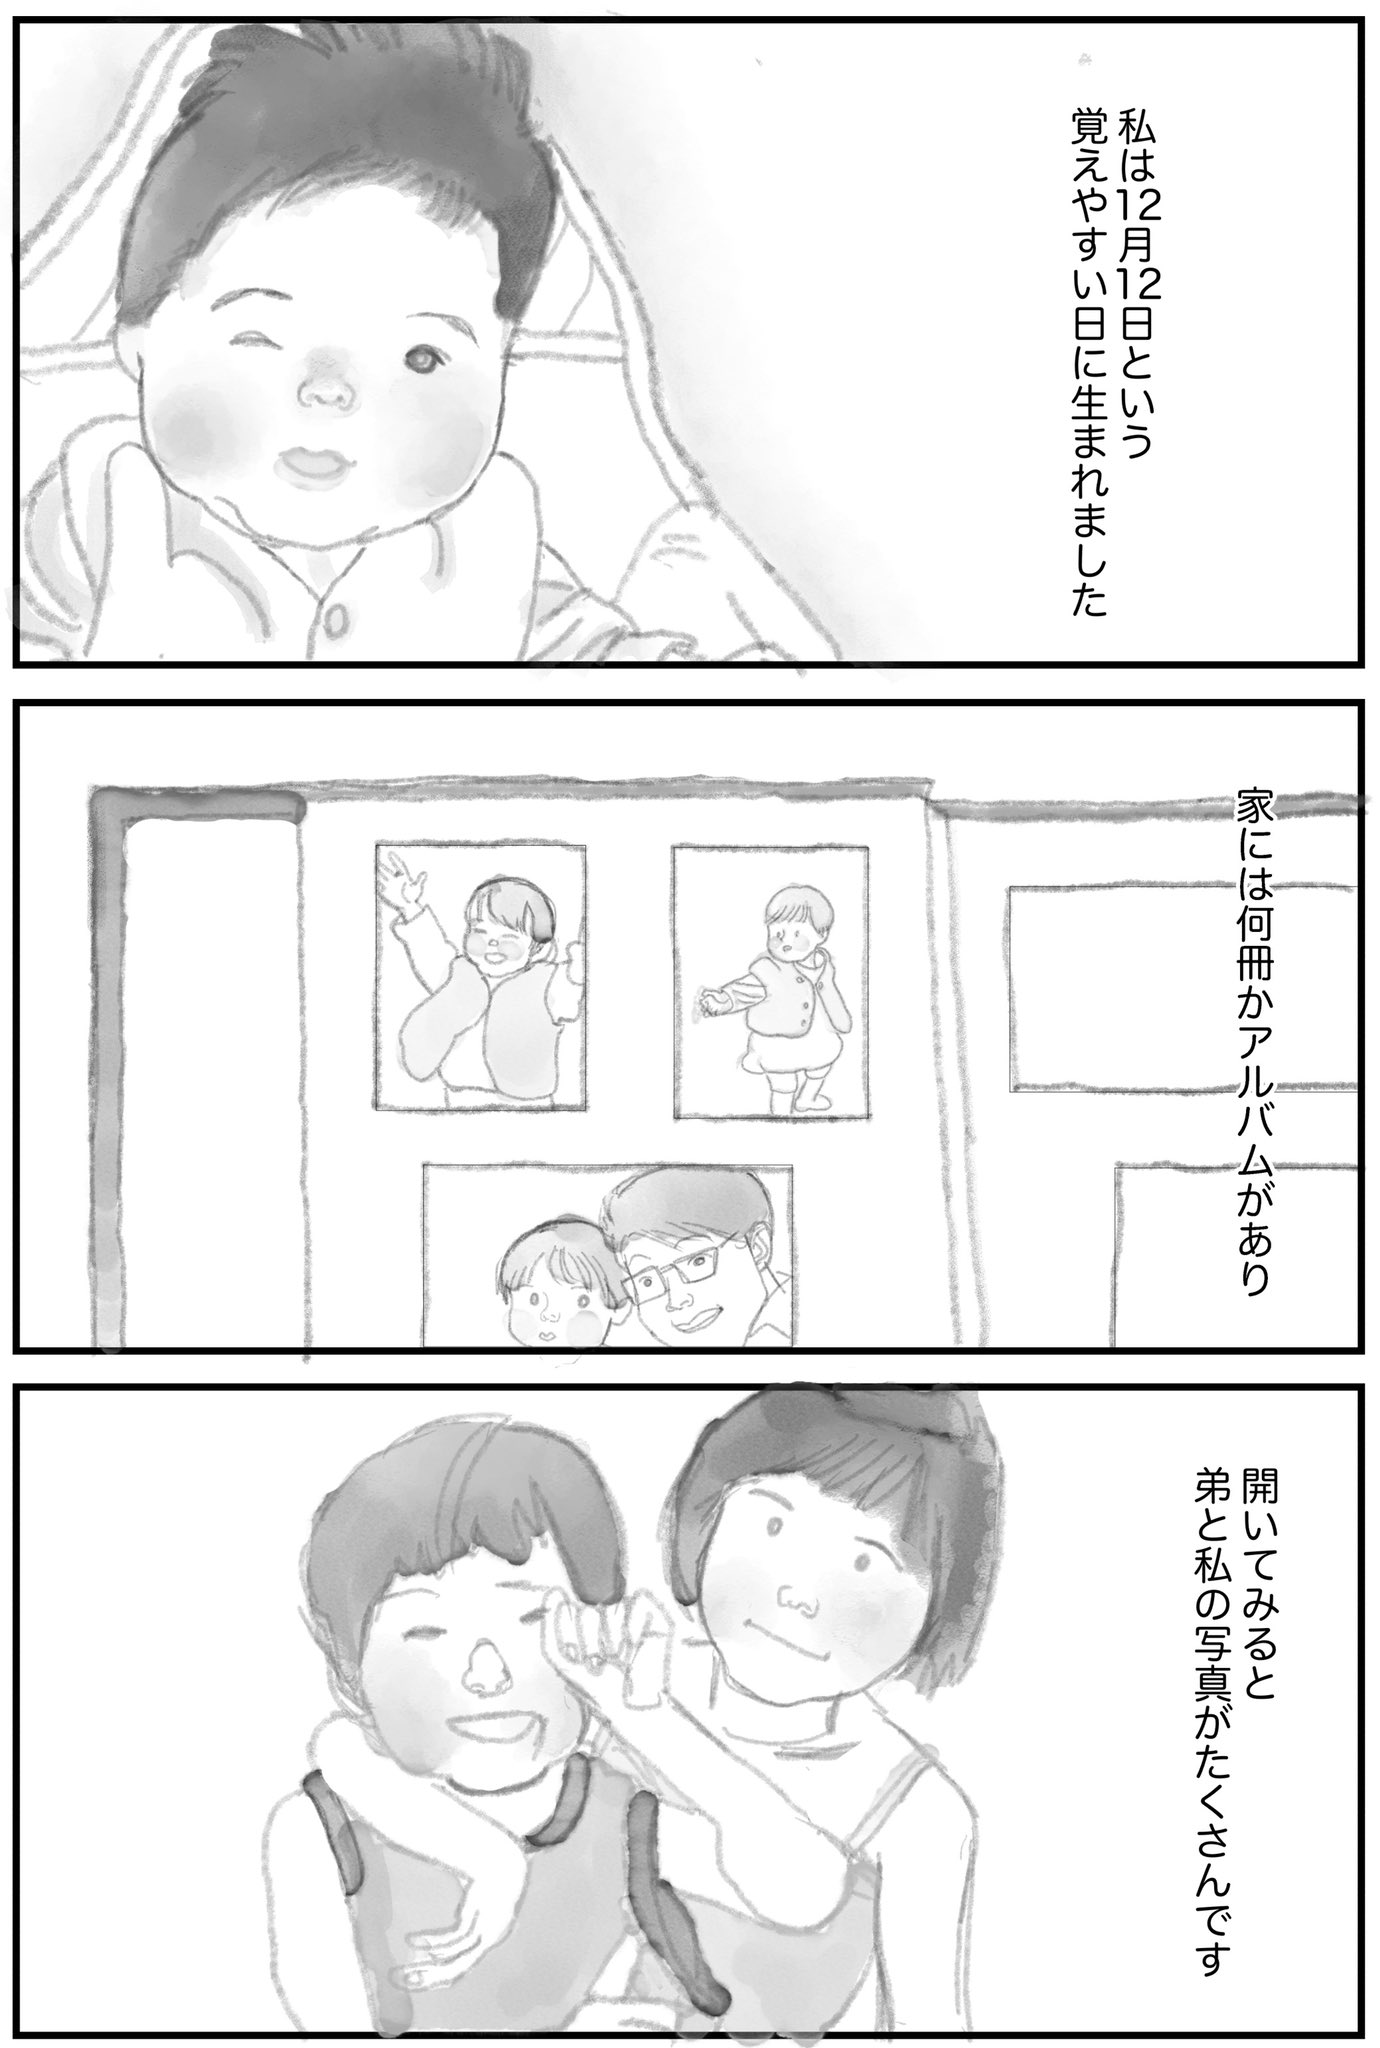 Himacoさん 漫画 1話